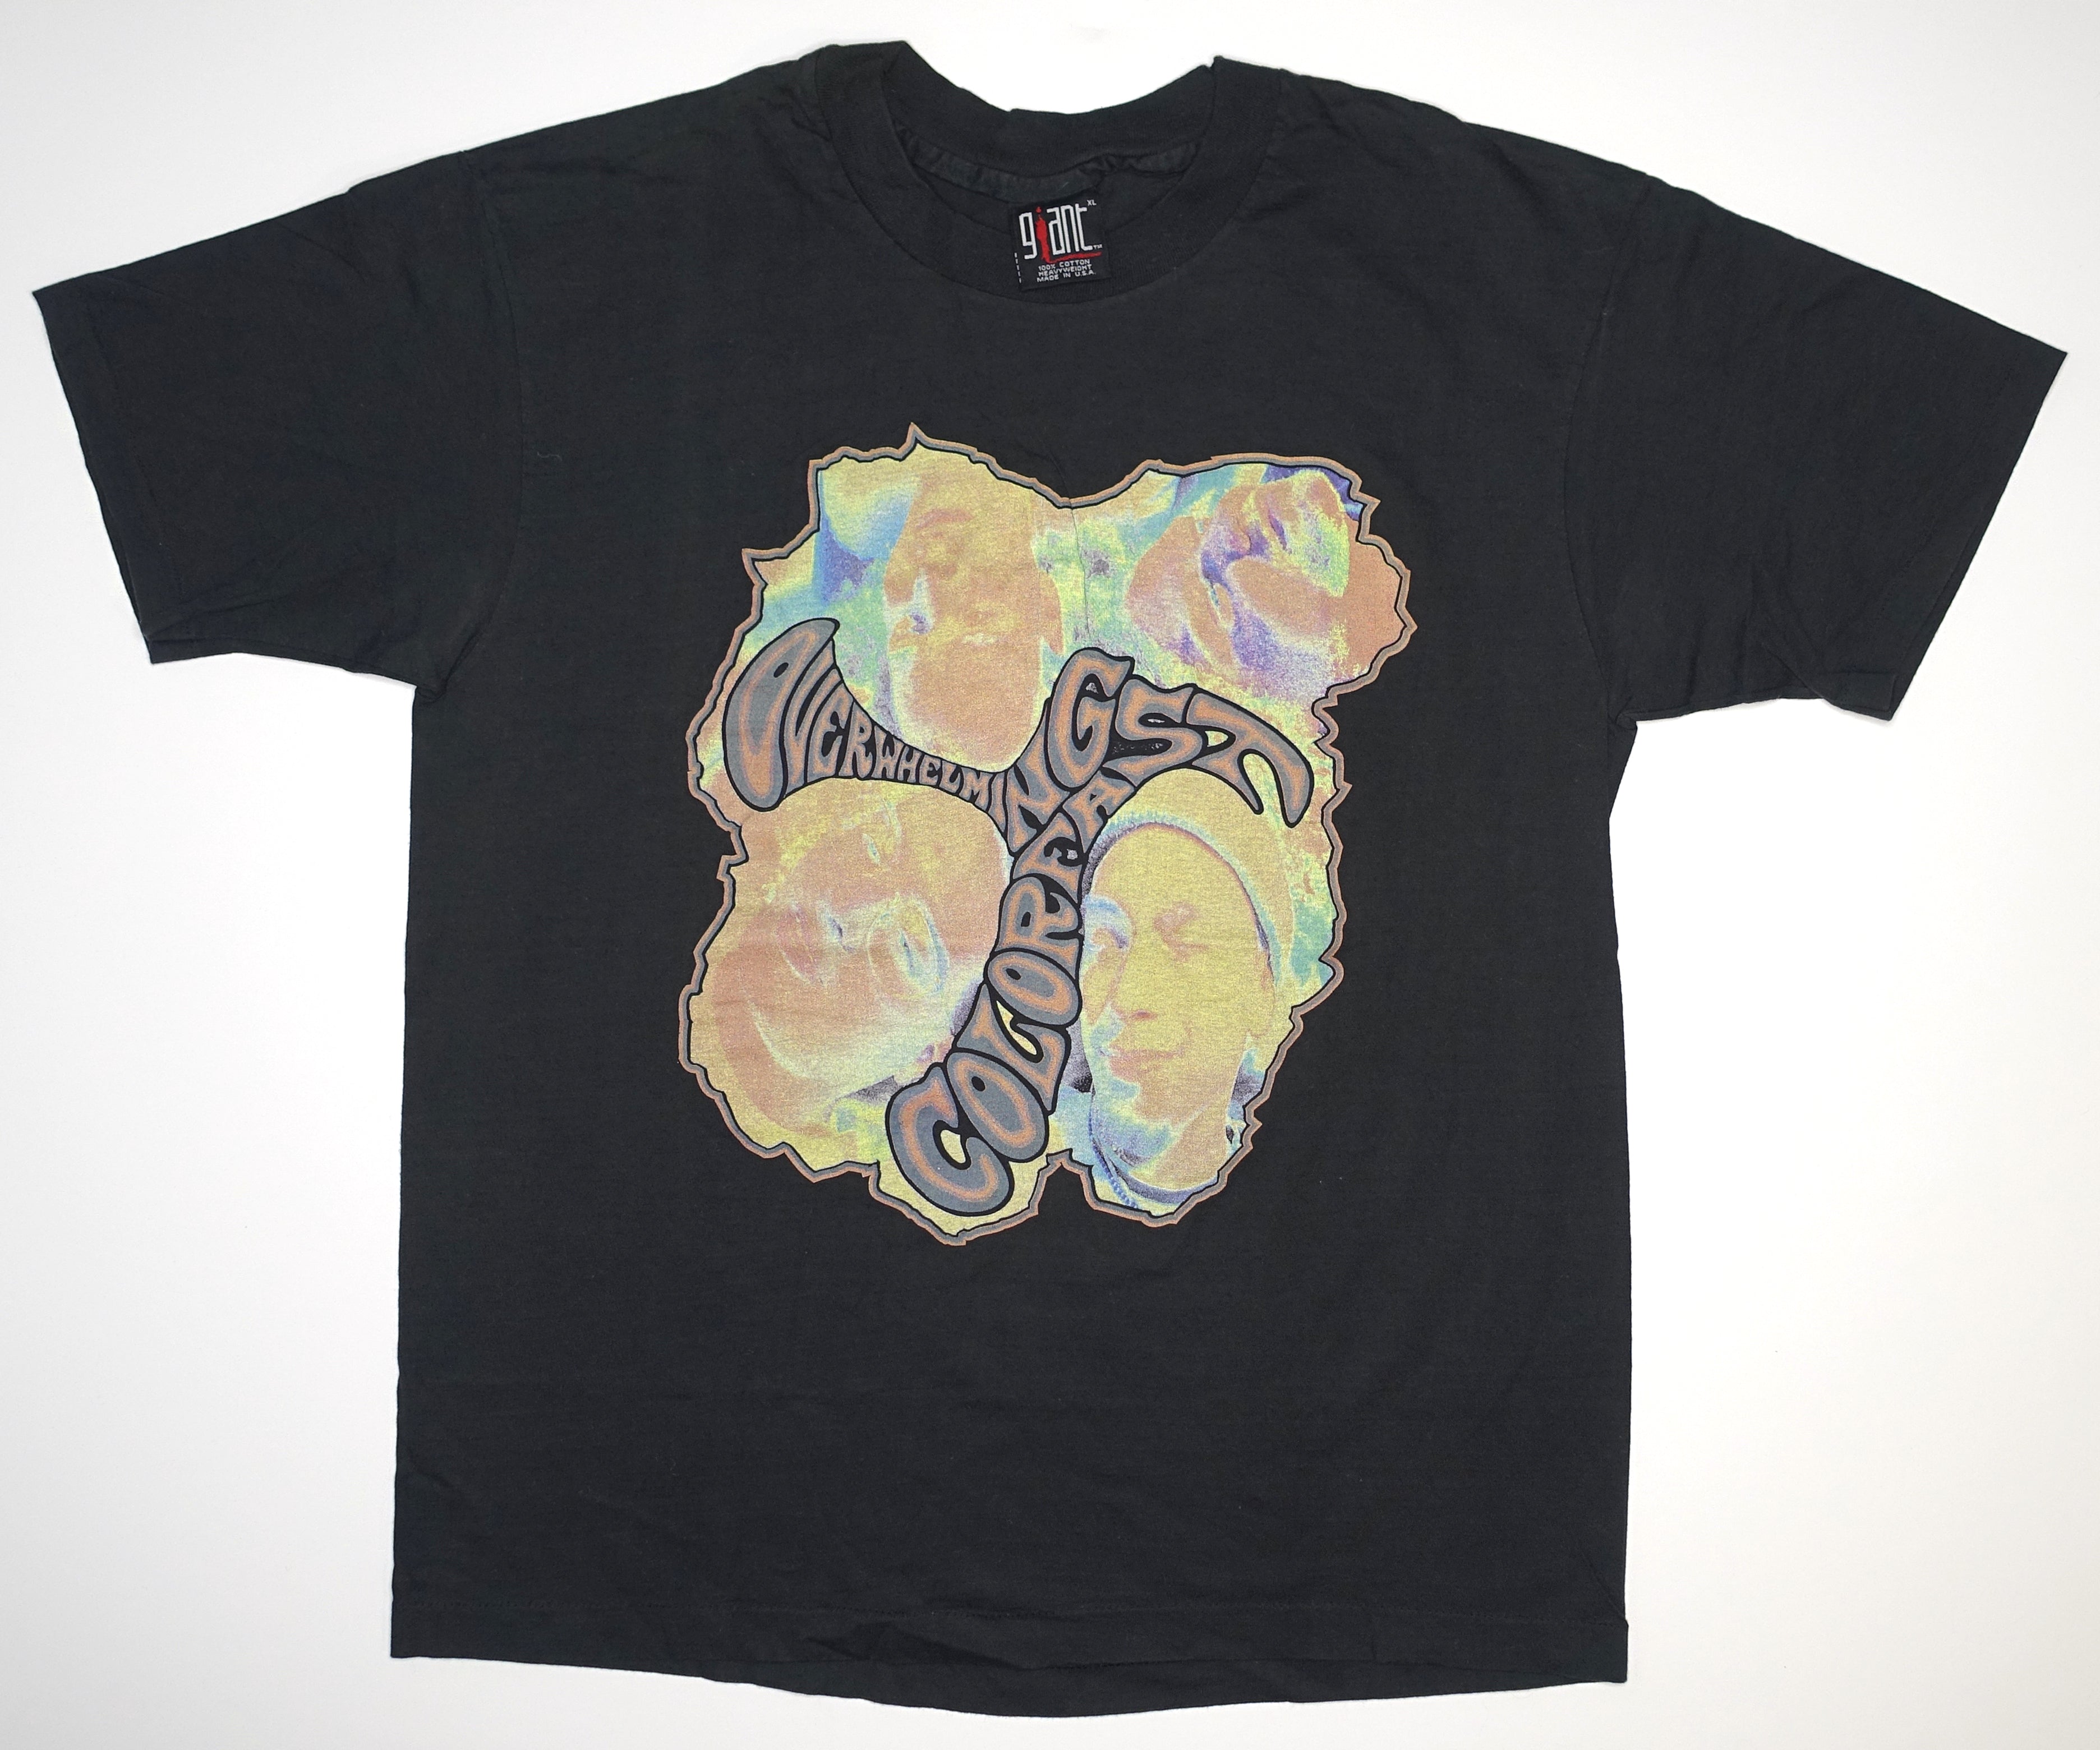 Overwhelming Colorfast - Overwhelming Colorfast 1992 Tour Shirt Size XL